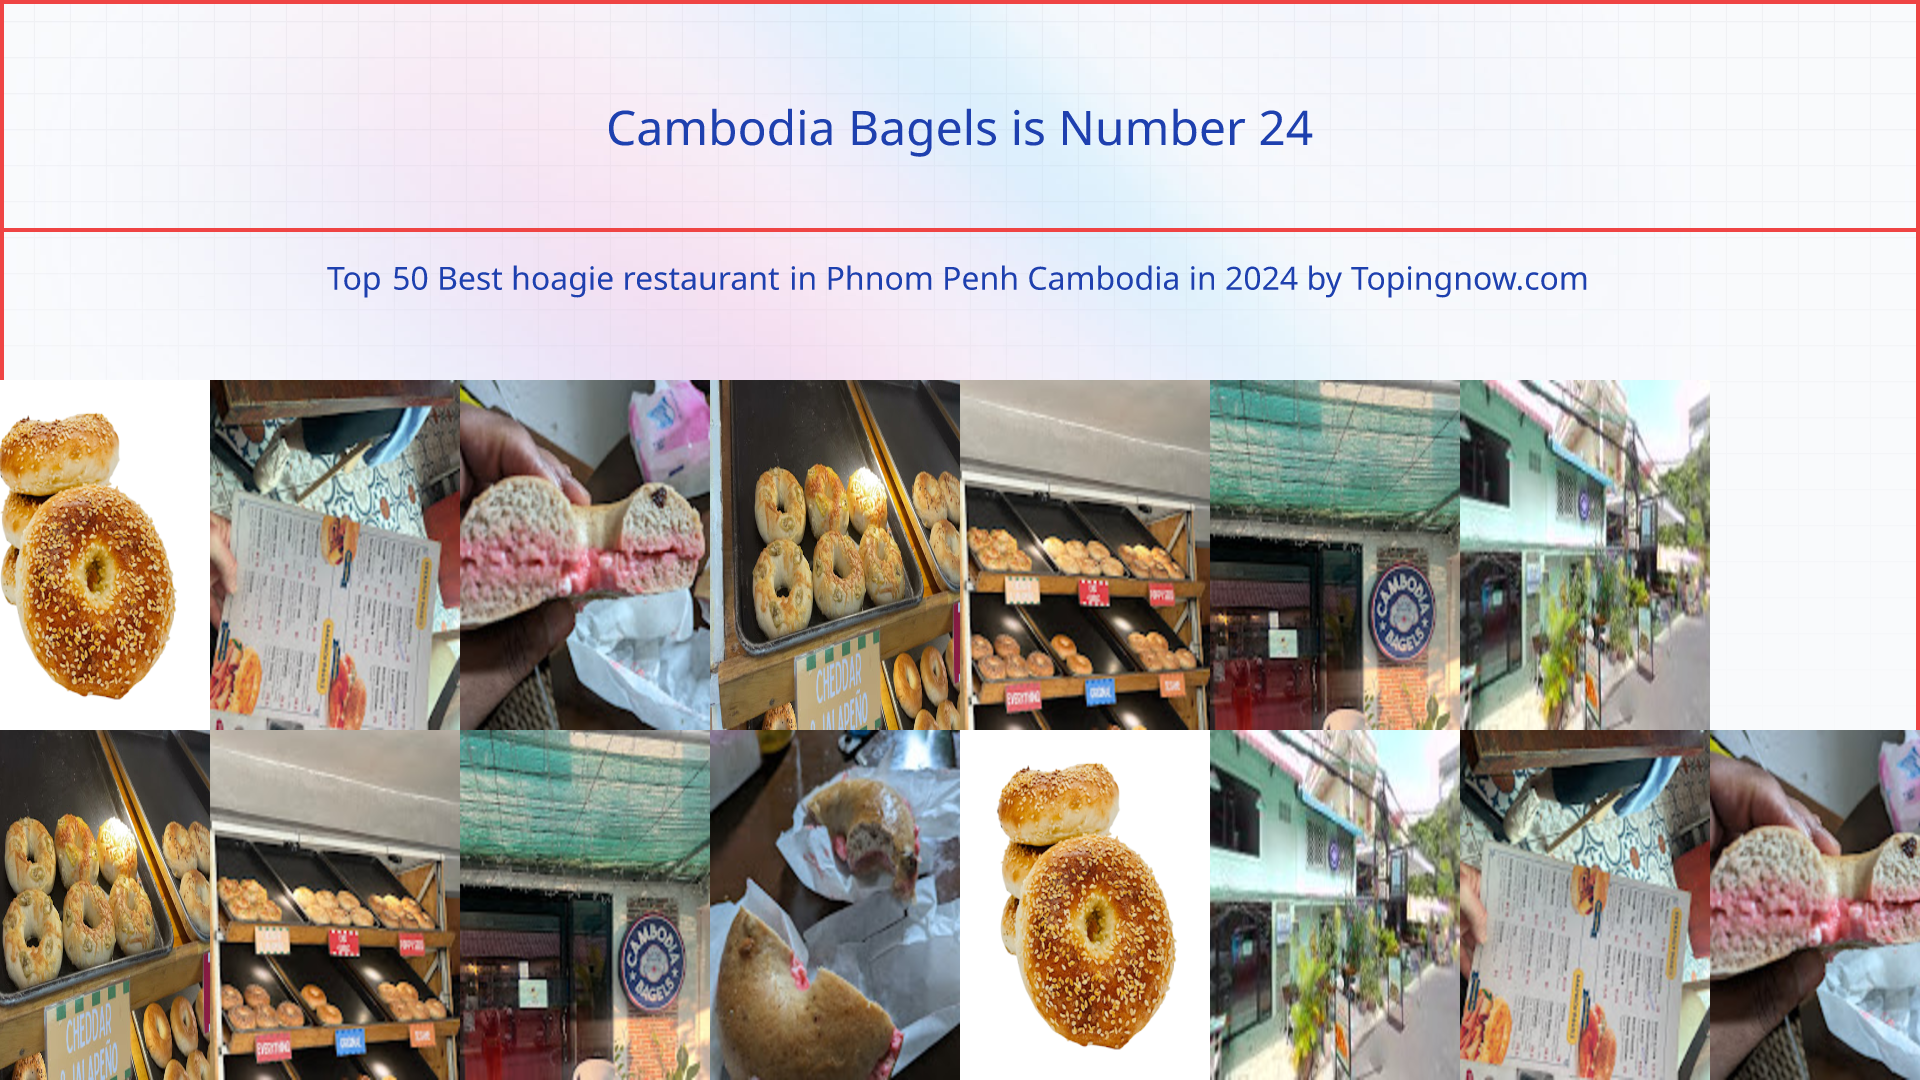 Cambodia Bagels: Top 50 Best hoagie restaurant in Phnom Penh Cambodia in 2024